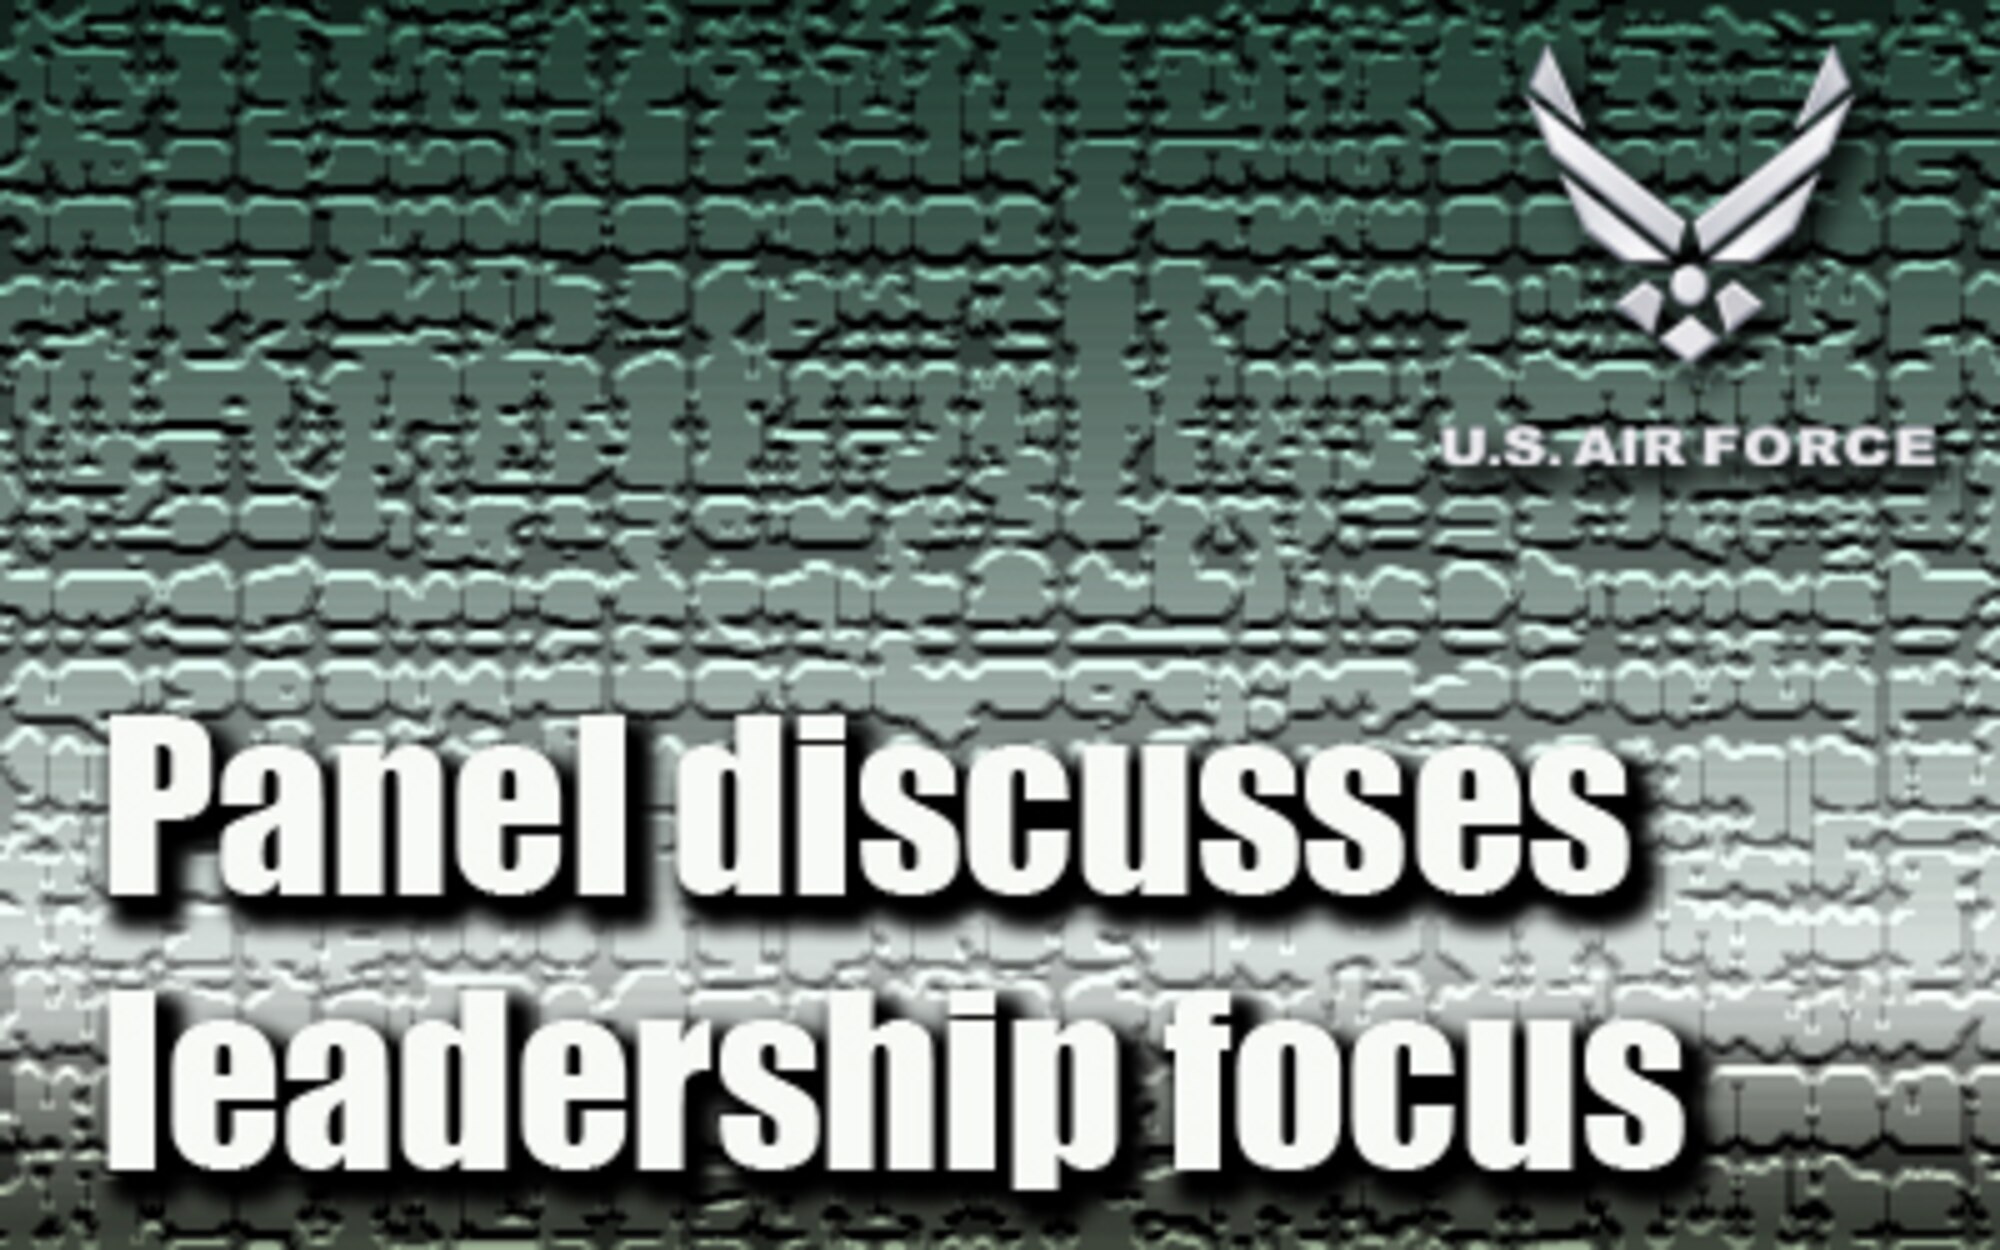 Panel discusses leadership focus